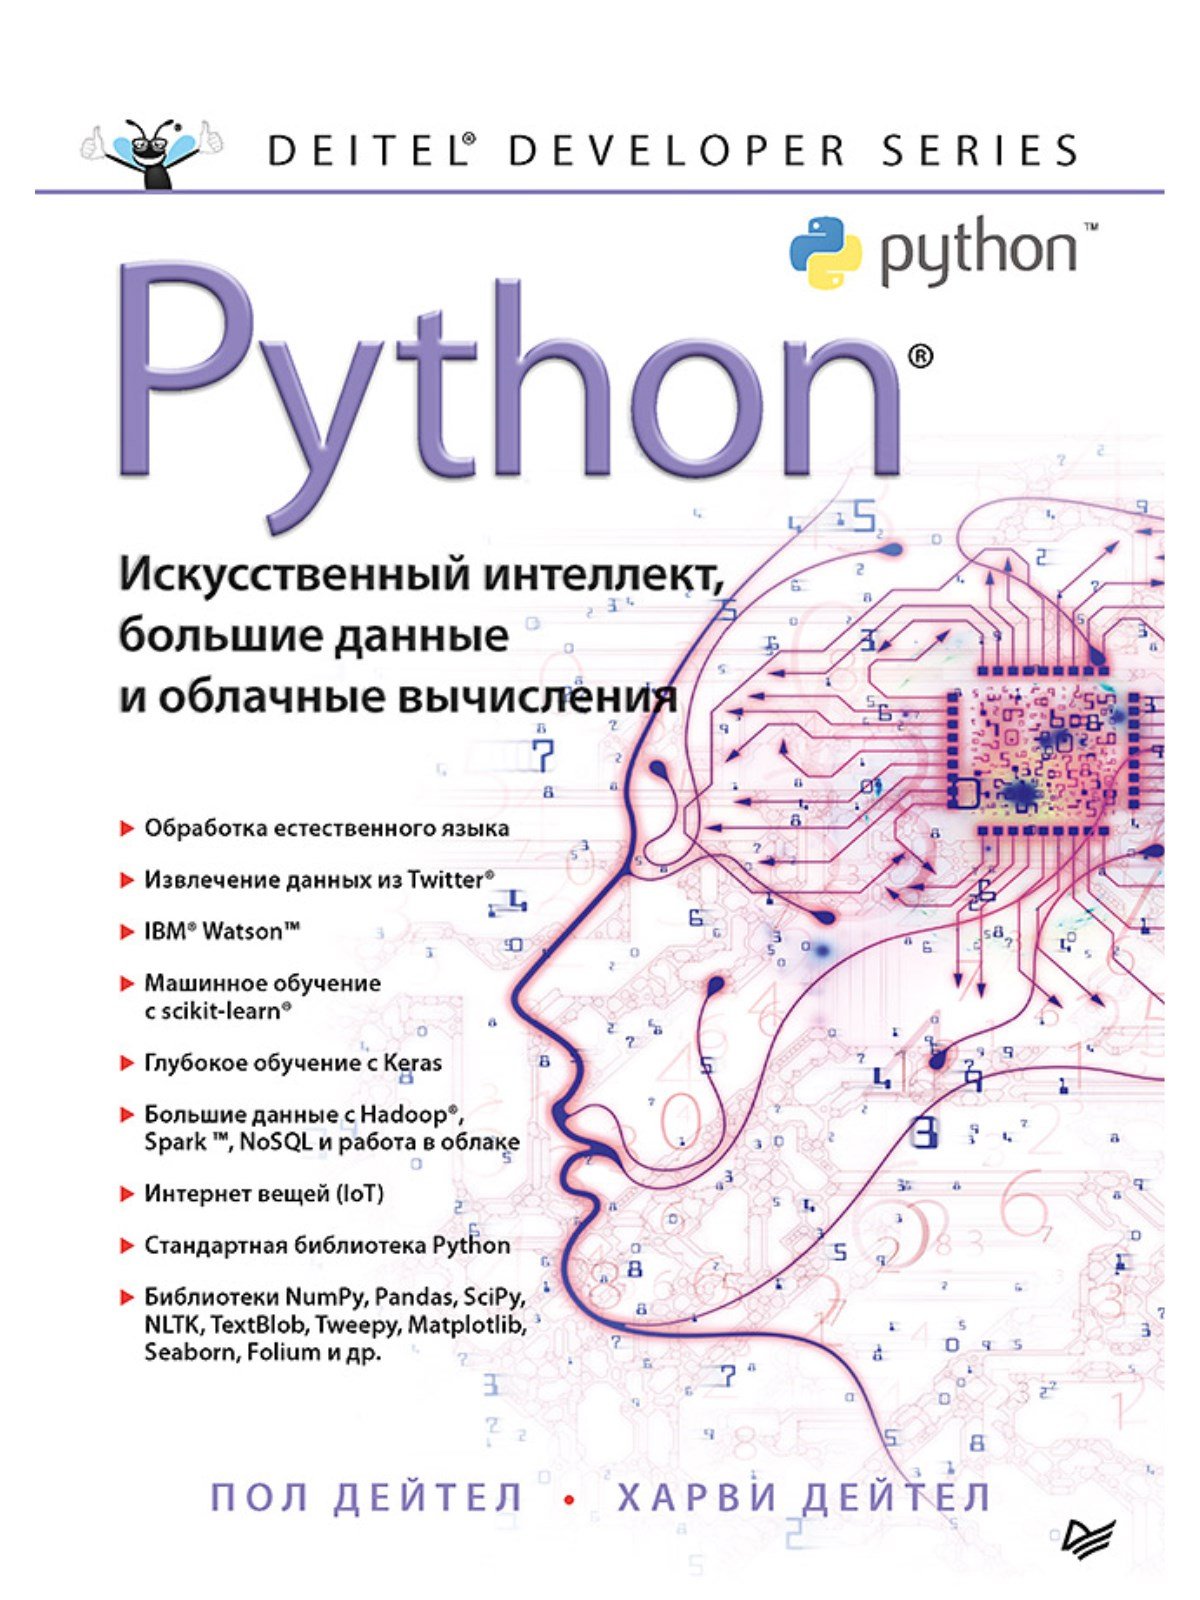 Дейтел Пол, Дейтел Х. Python: Искусственный интеллект, большие данные и облачные вычисления